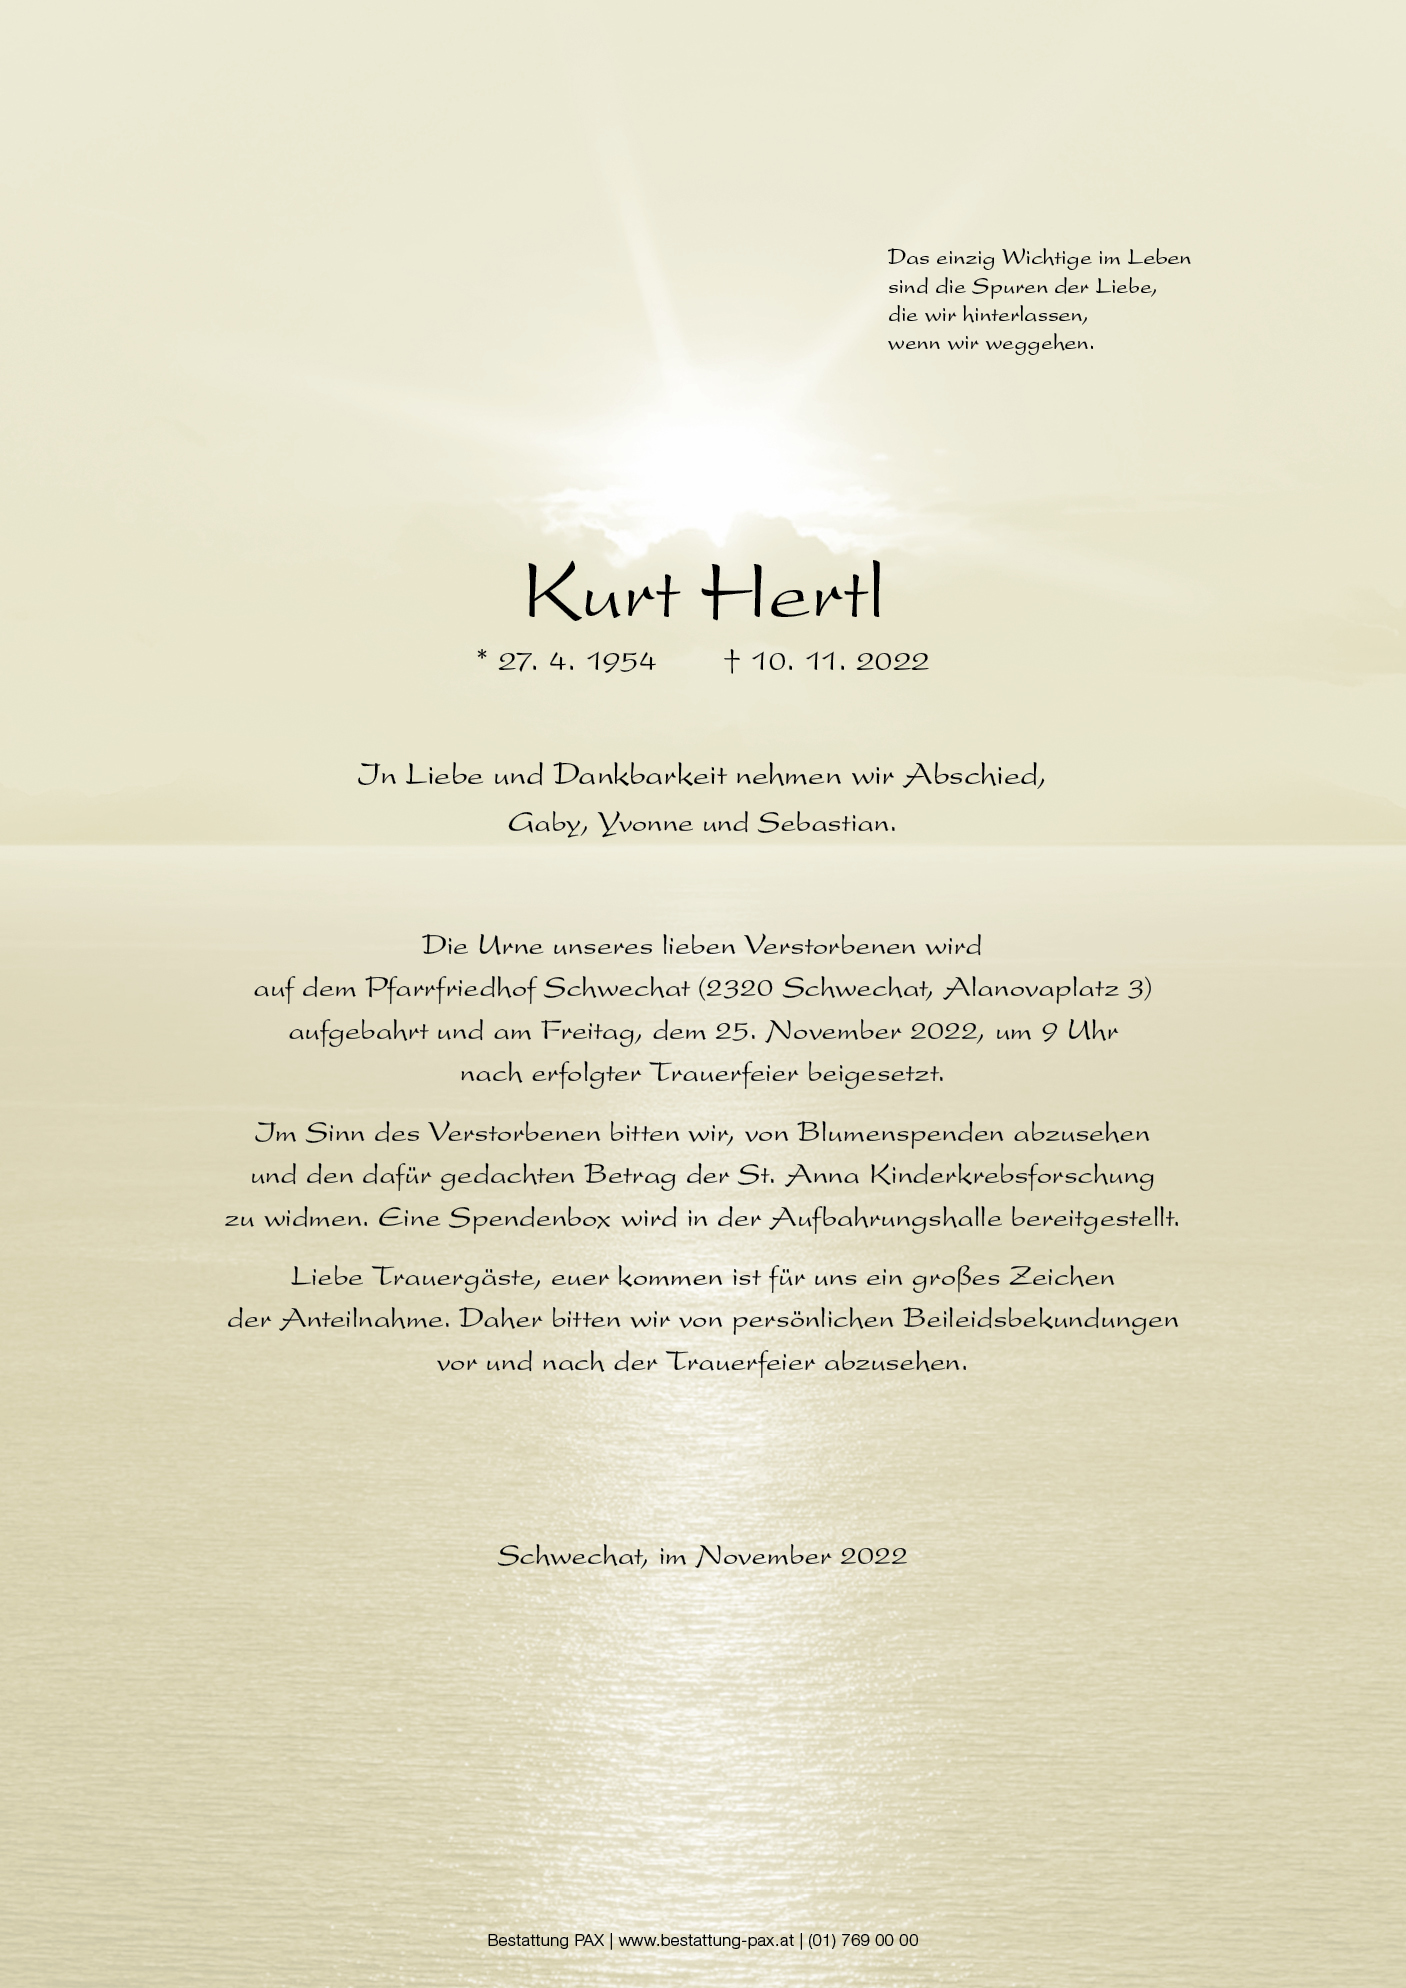 Kurt Hertl